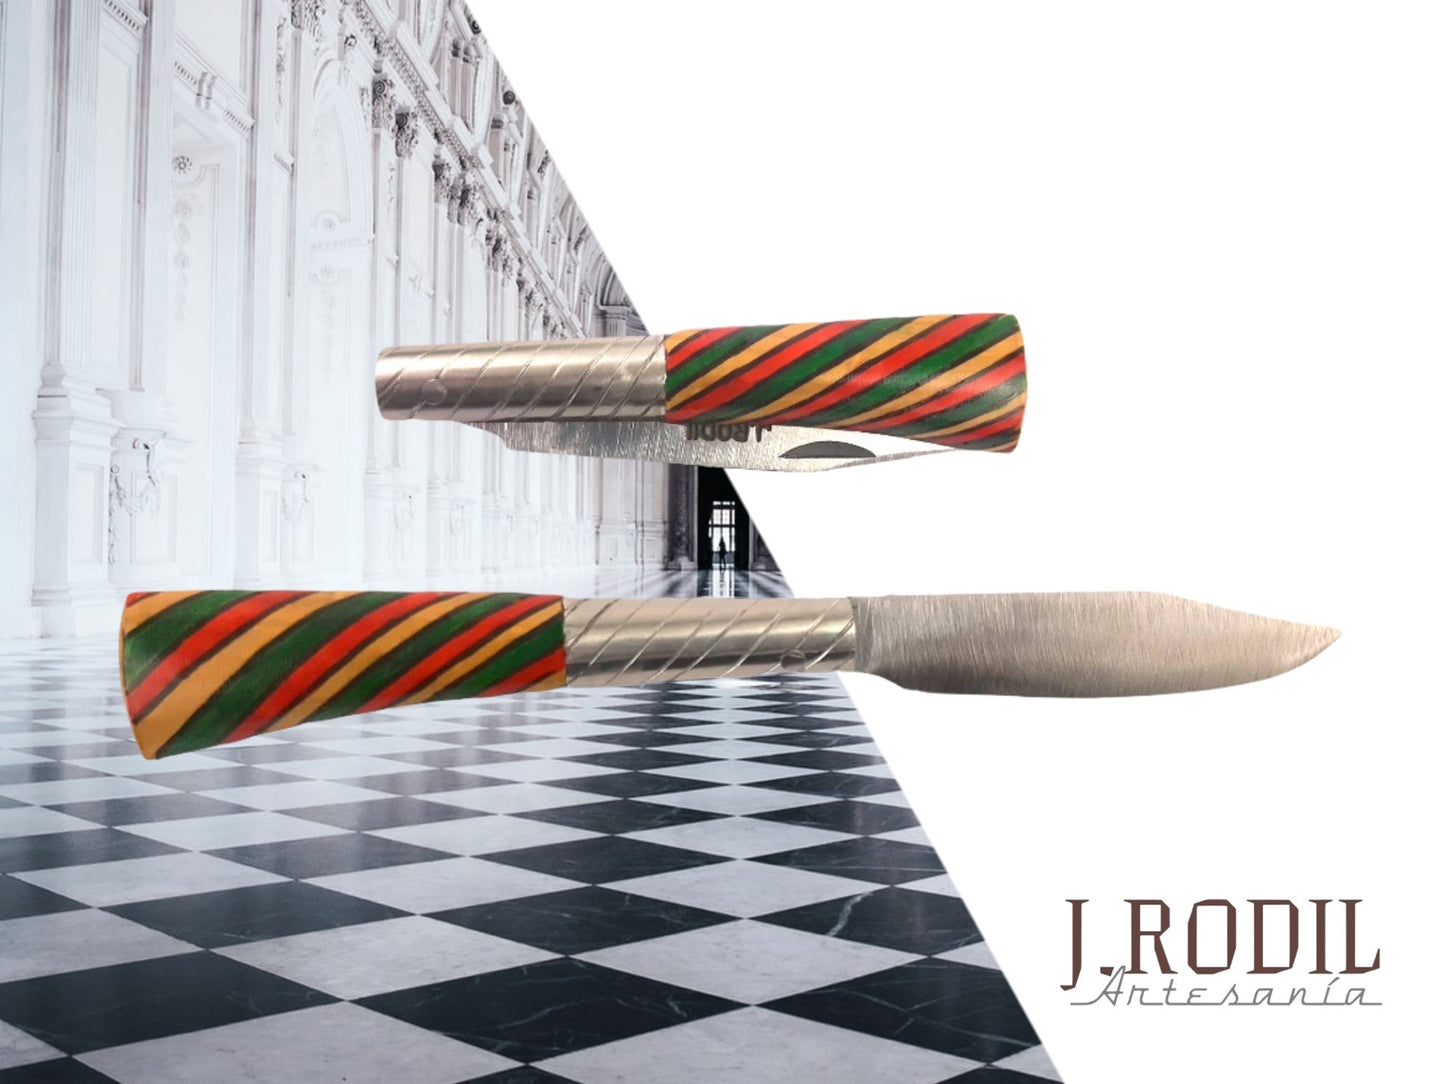 J. Rodil Knife - Model 31 | eccentric